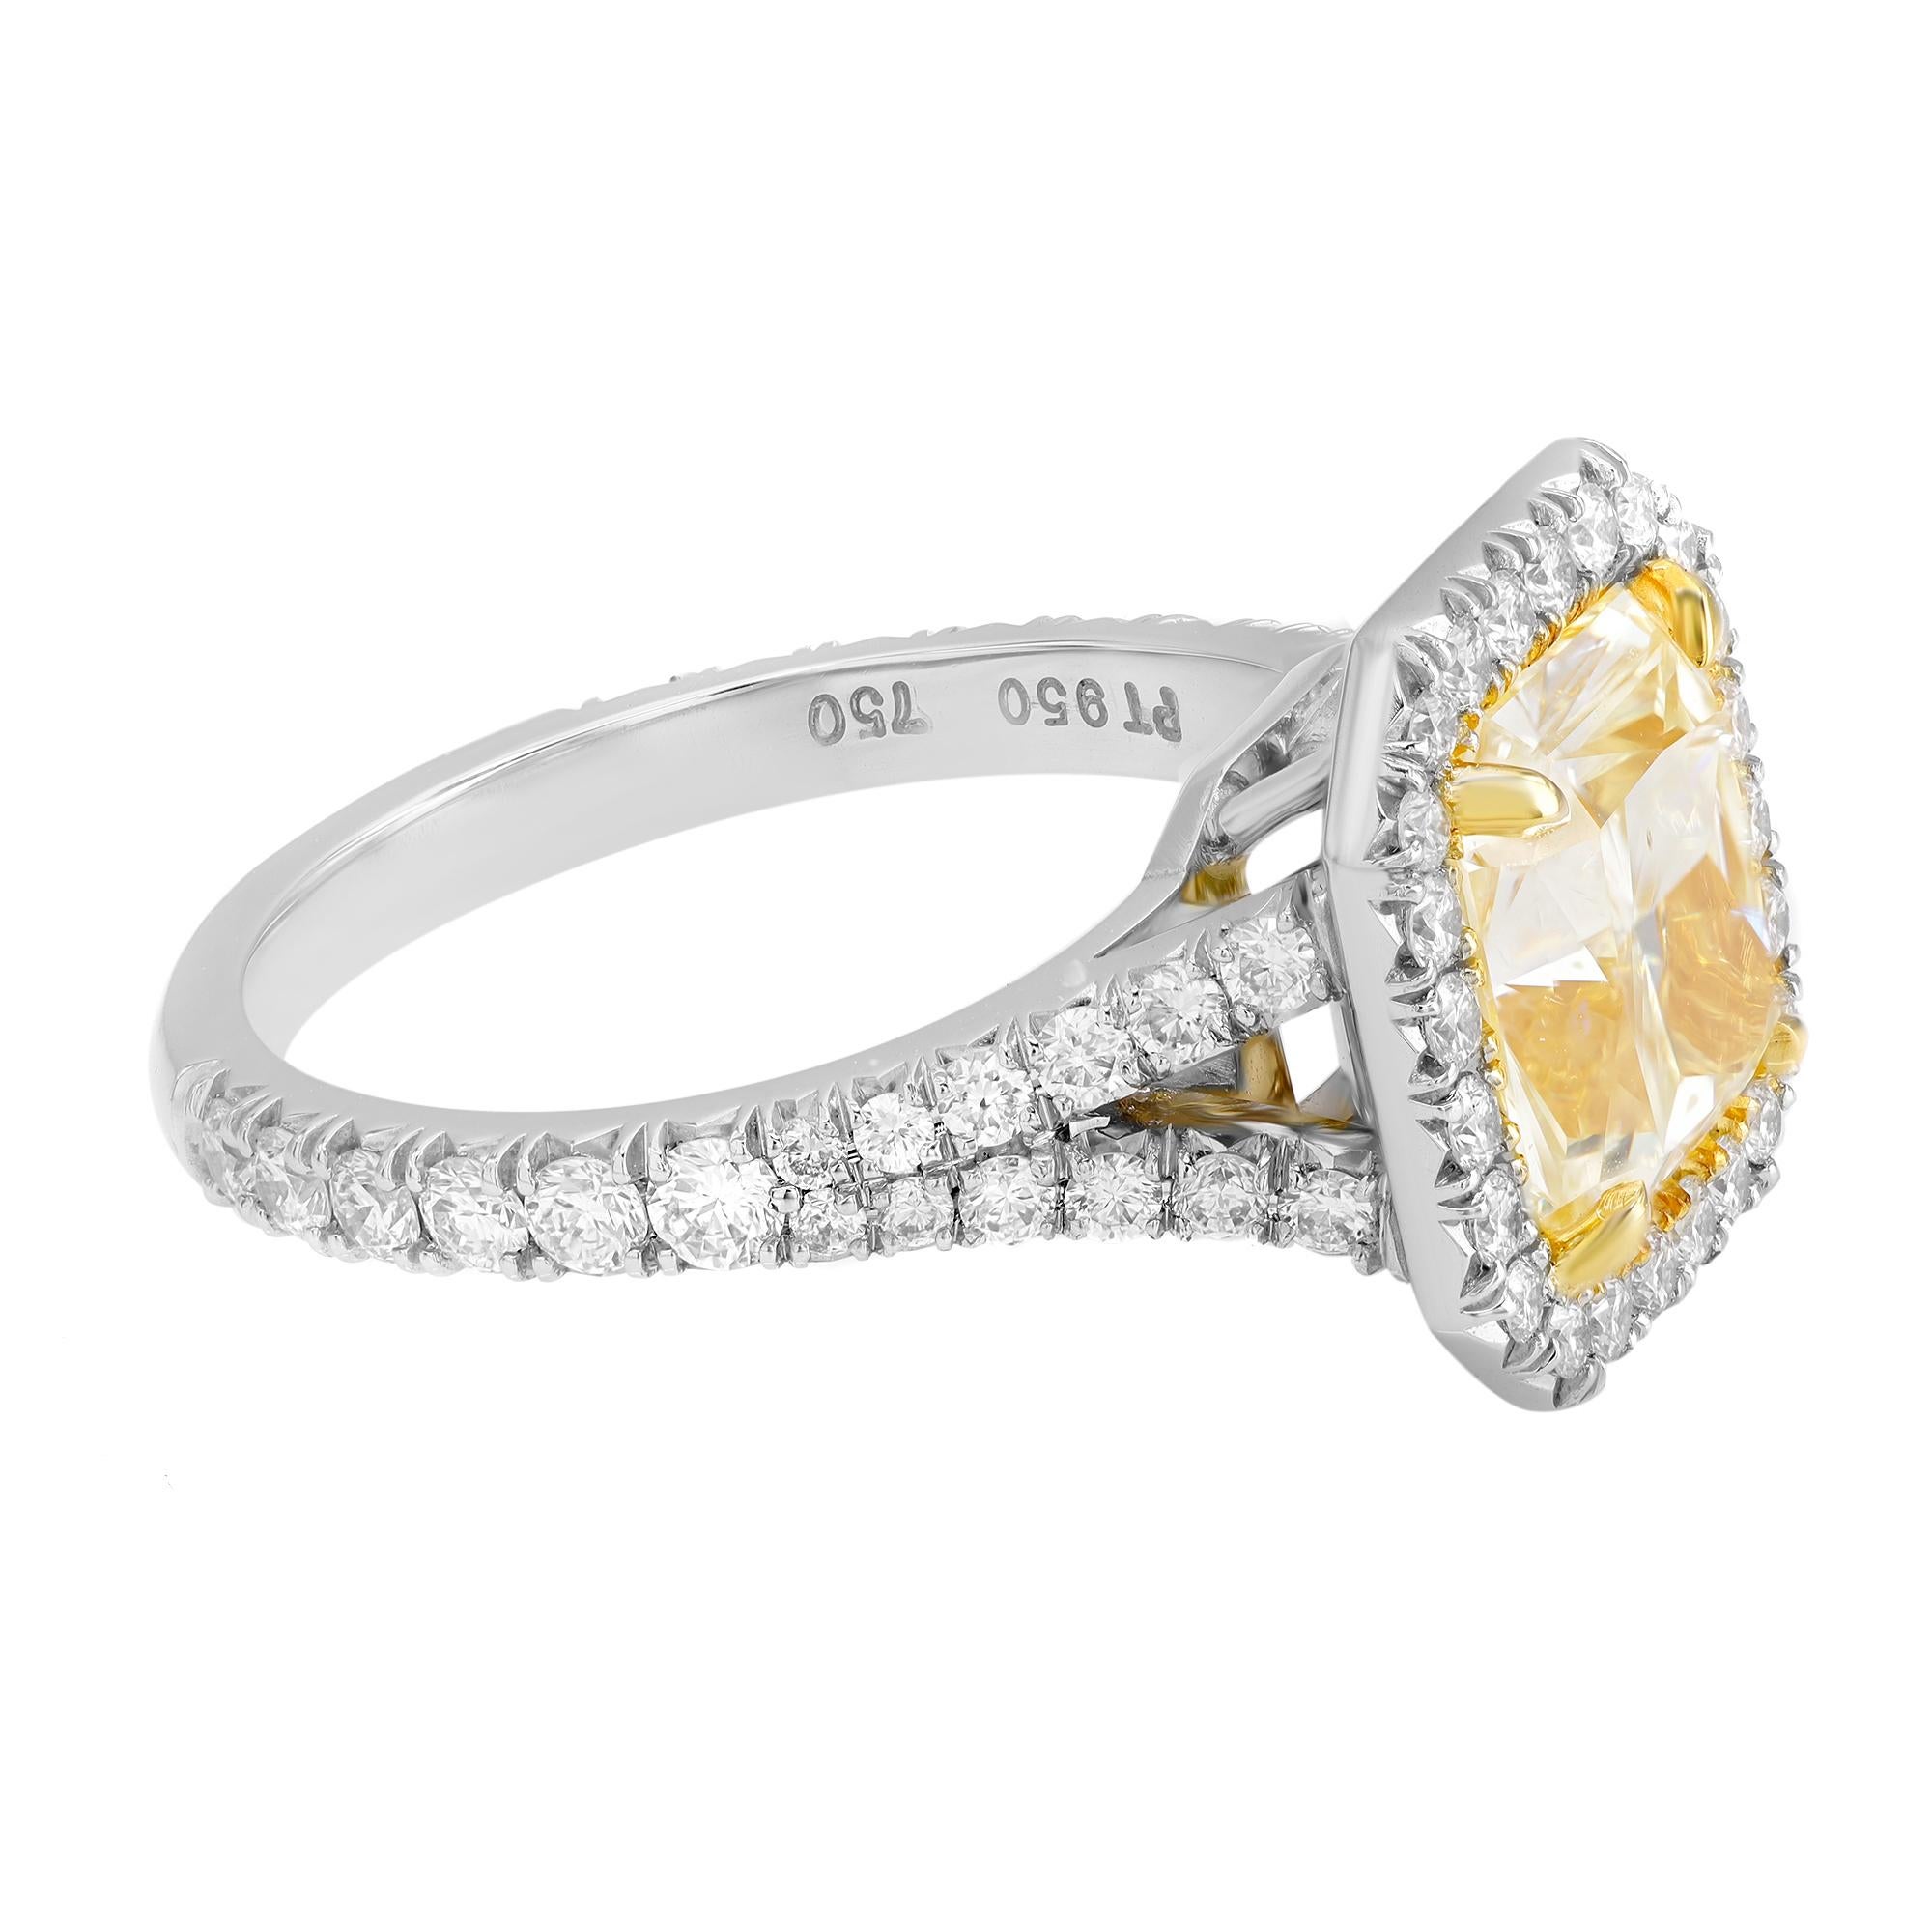 Dieser atemberaubende Verlobungsring zeichnet sich durch einen in Zacken gefassten, eckigen, rechteckigen Diamanten im Brillantschliff mit einem Gewicht von 3,03 Karat aus, der von einem Kranz funkelnder runder weißer Diamanten umgeben ist, die das